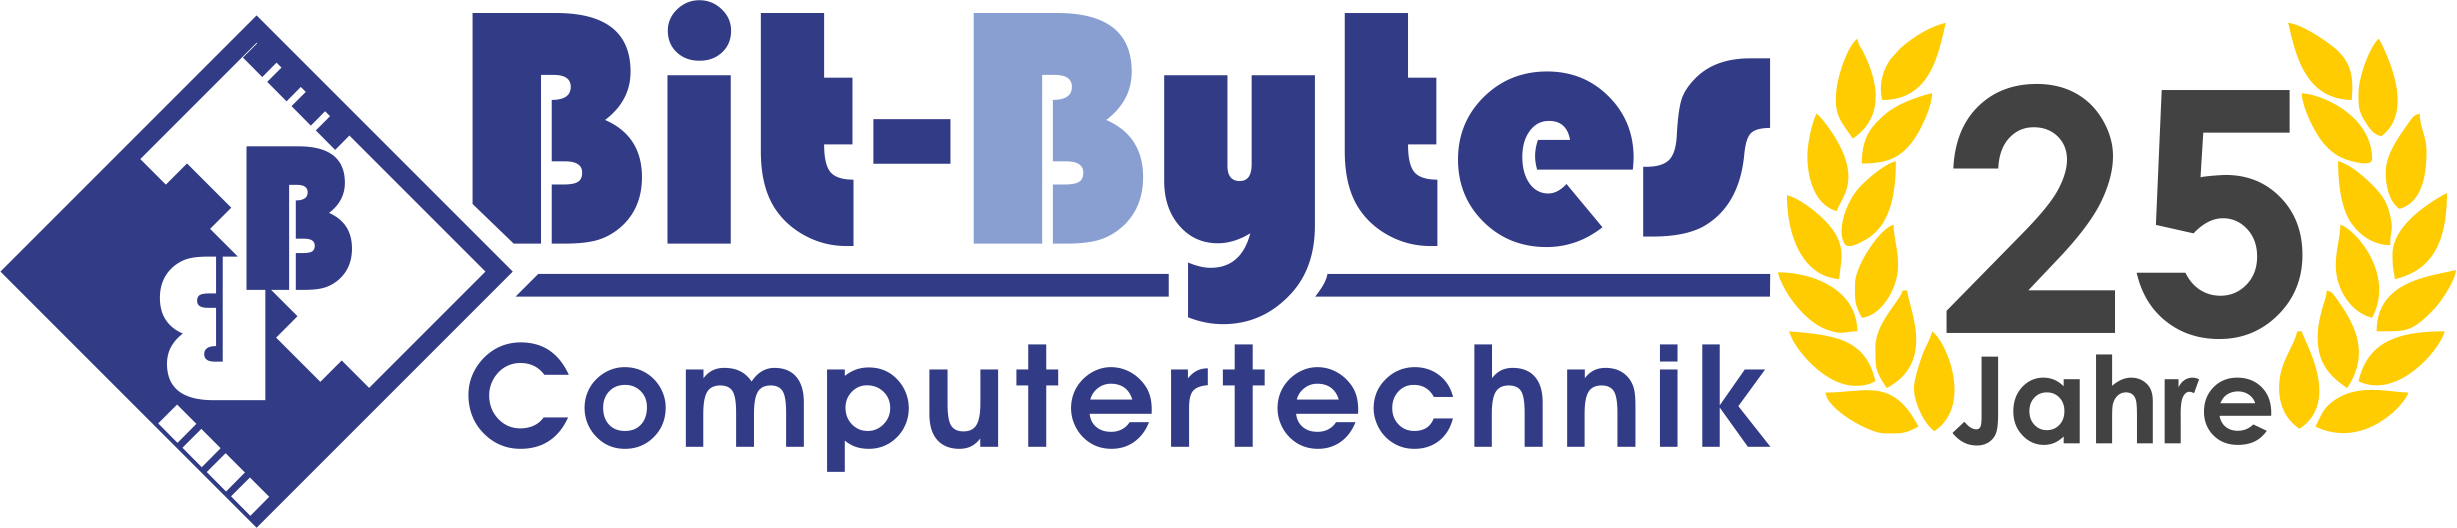 PC Doktor Bit-Bytes Bitburg